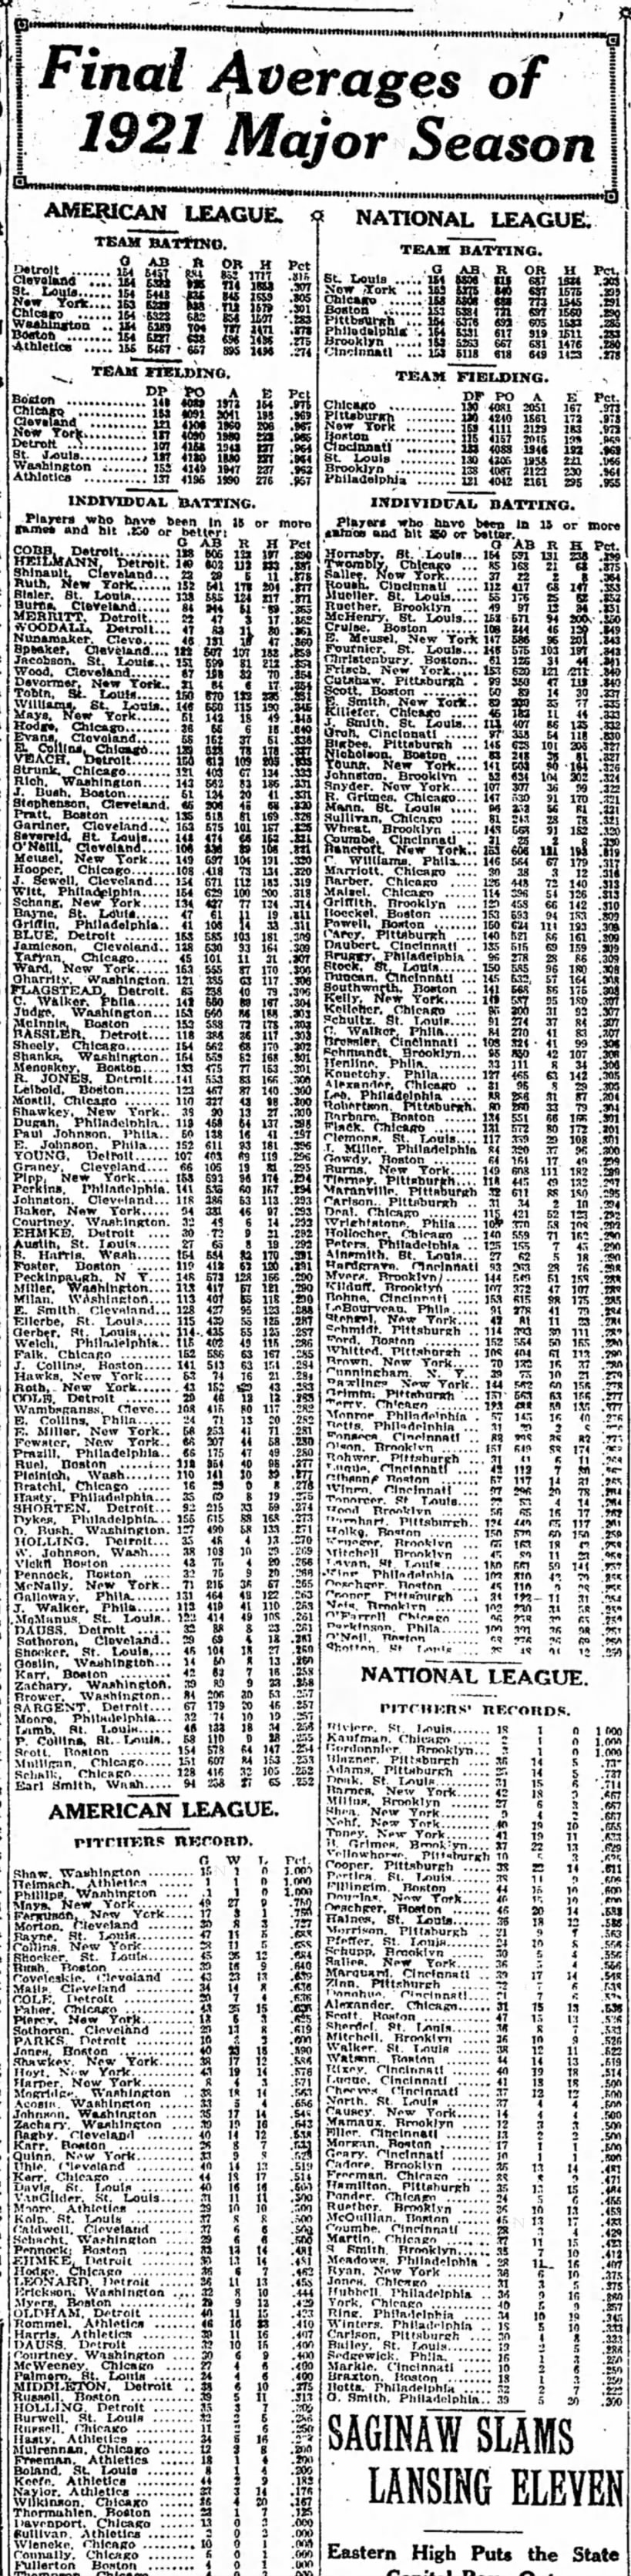 Final Averages of 1921 Major Season